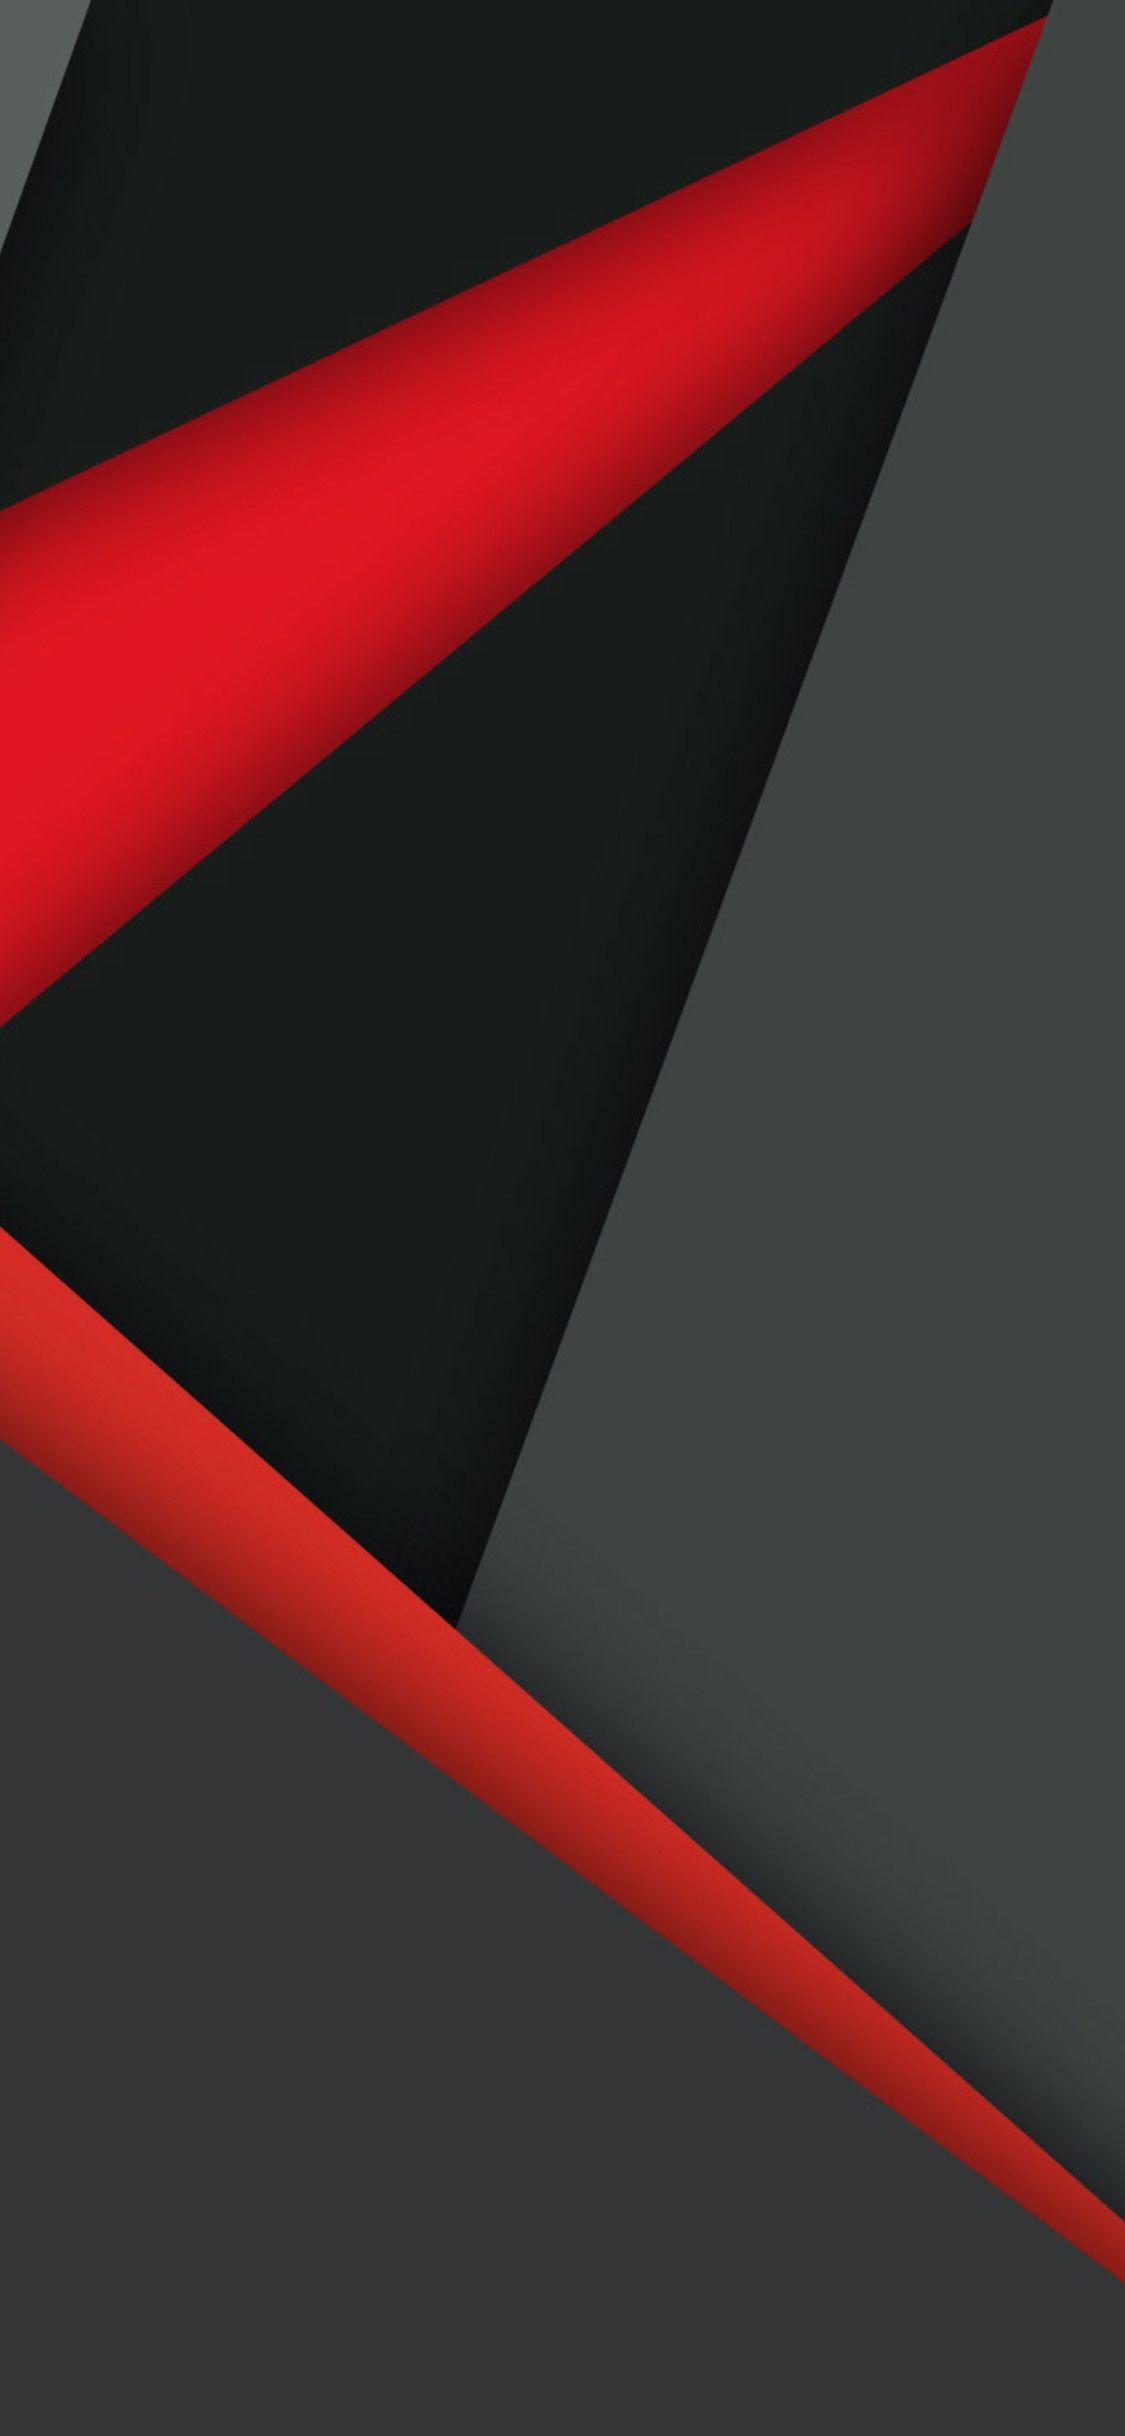 Red and Black Phone Wallpapers - Top Những Hình Ảnh Đẹp